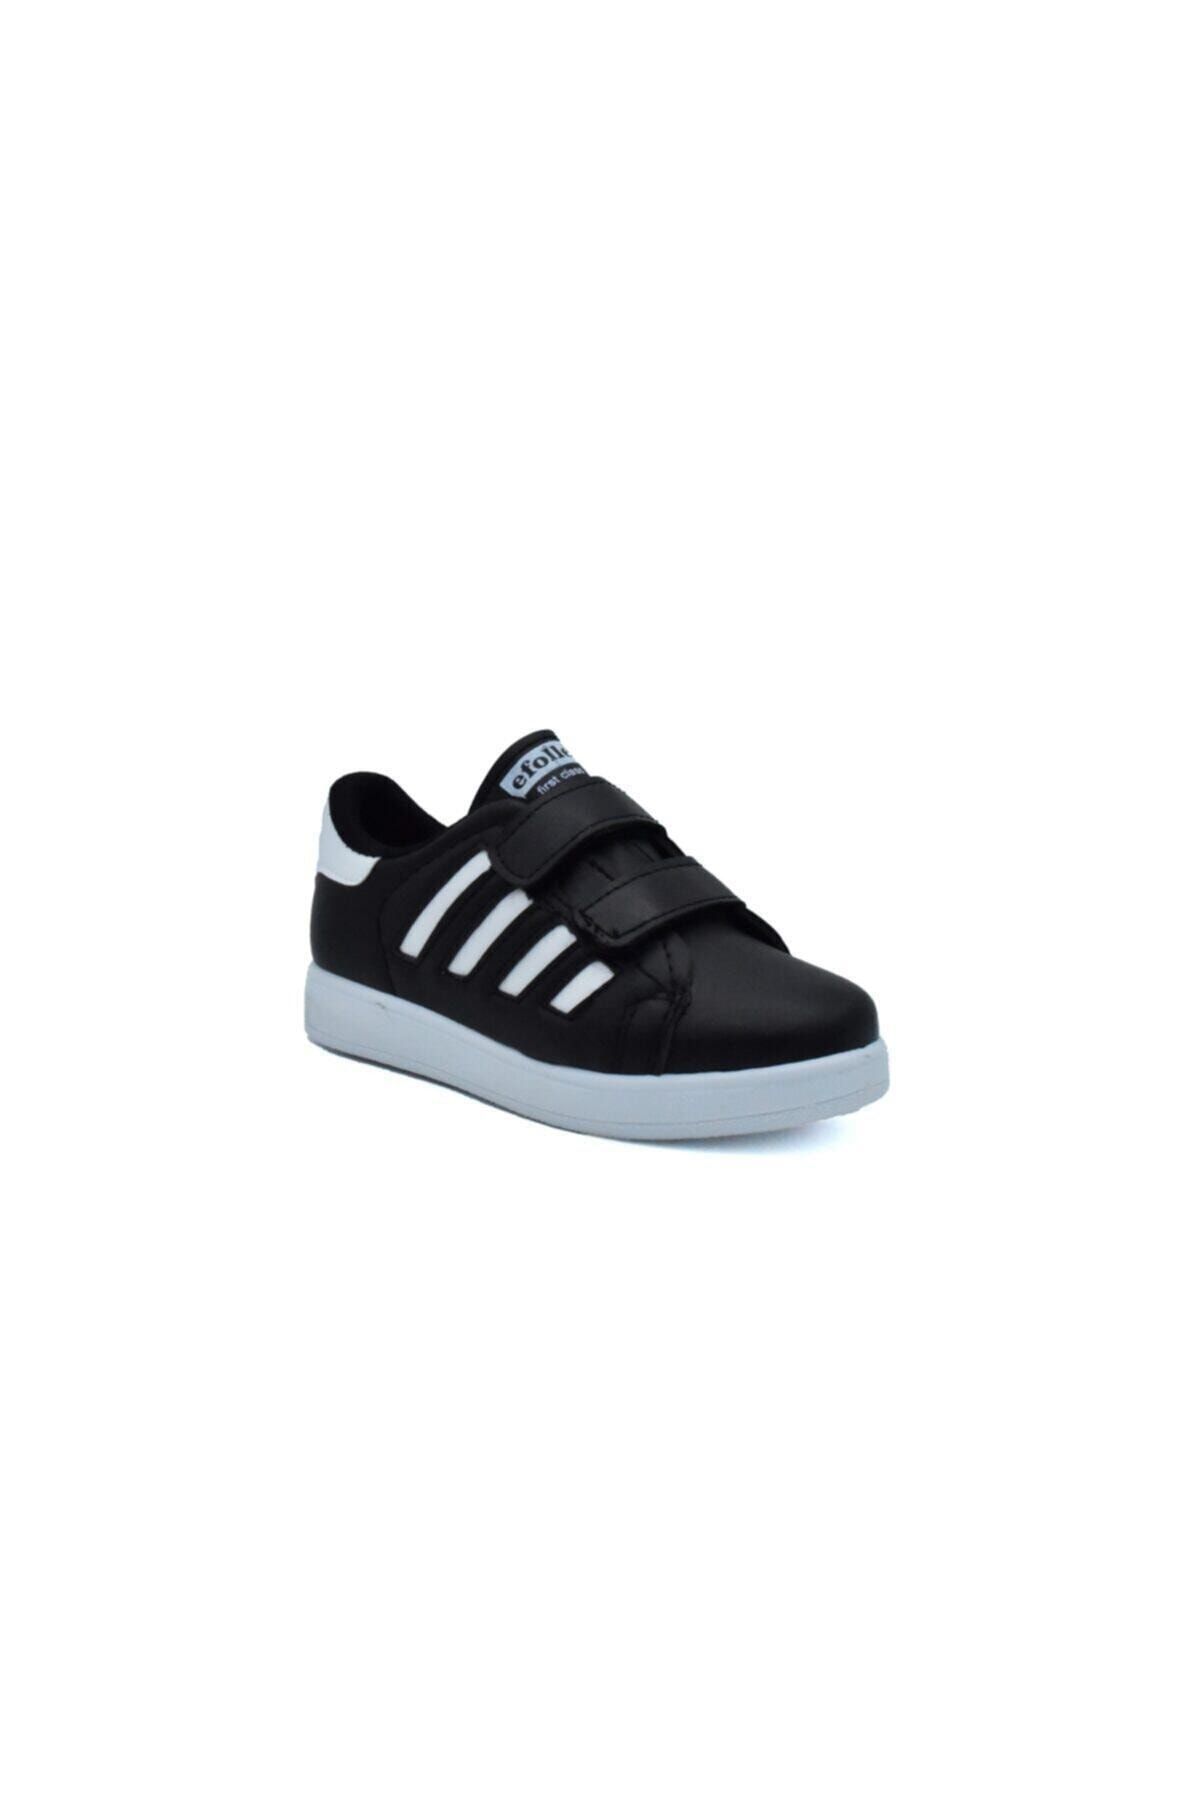 Efolle Unisex Cırtlı Çocuk Spor Ayakkabı 4 Bant Siyah Beyaz Spor